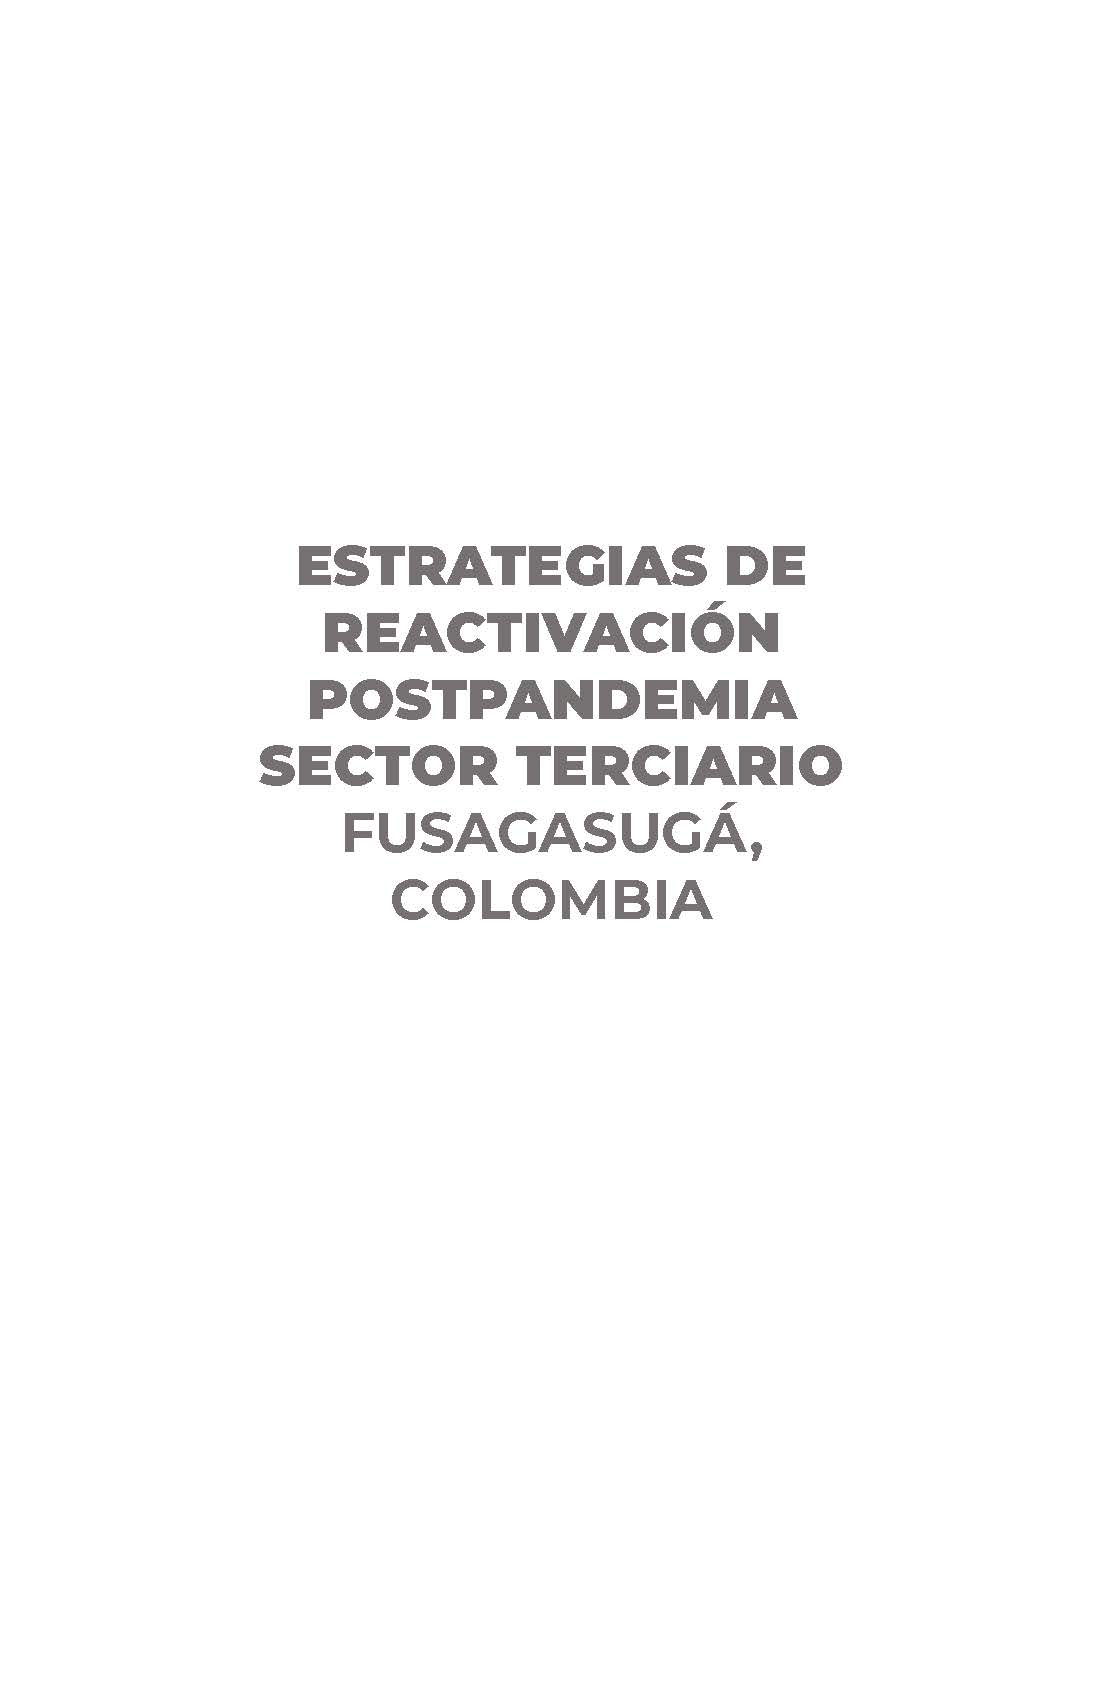 Estrategias de Reactivación Postpandemia Sector Terciario, Fusagasugá, Colombia